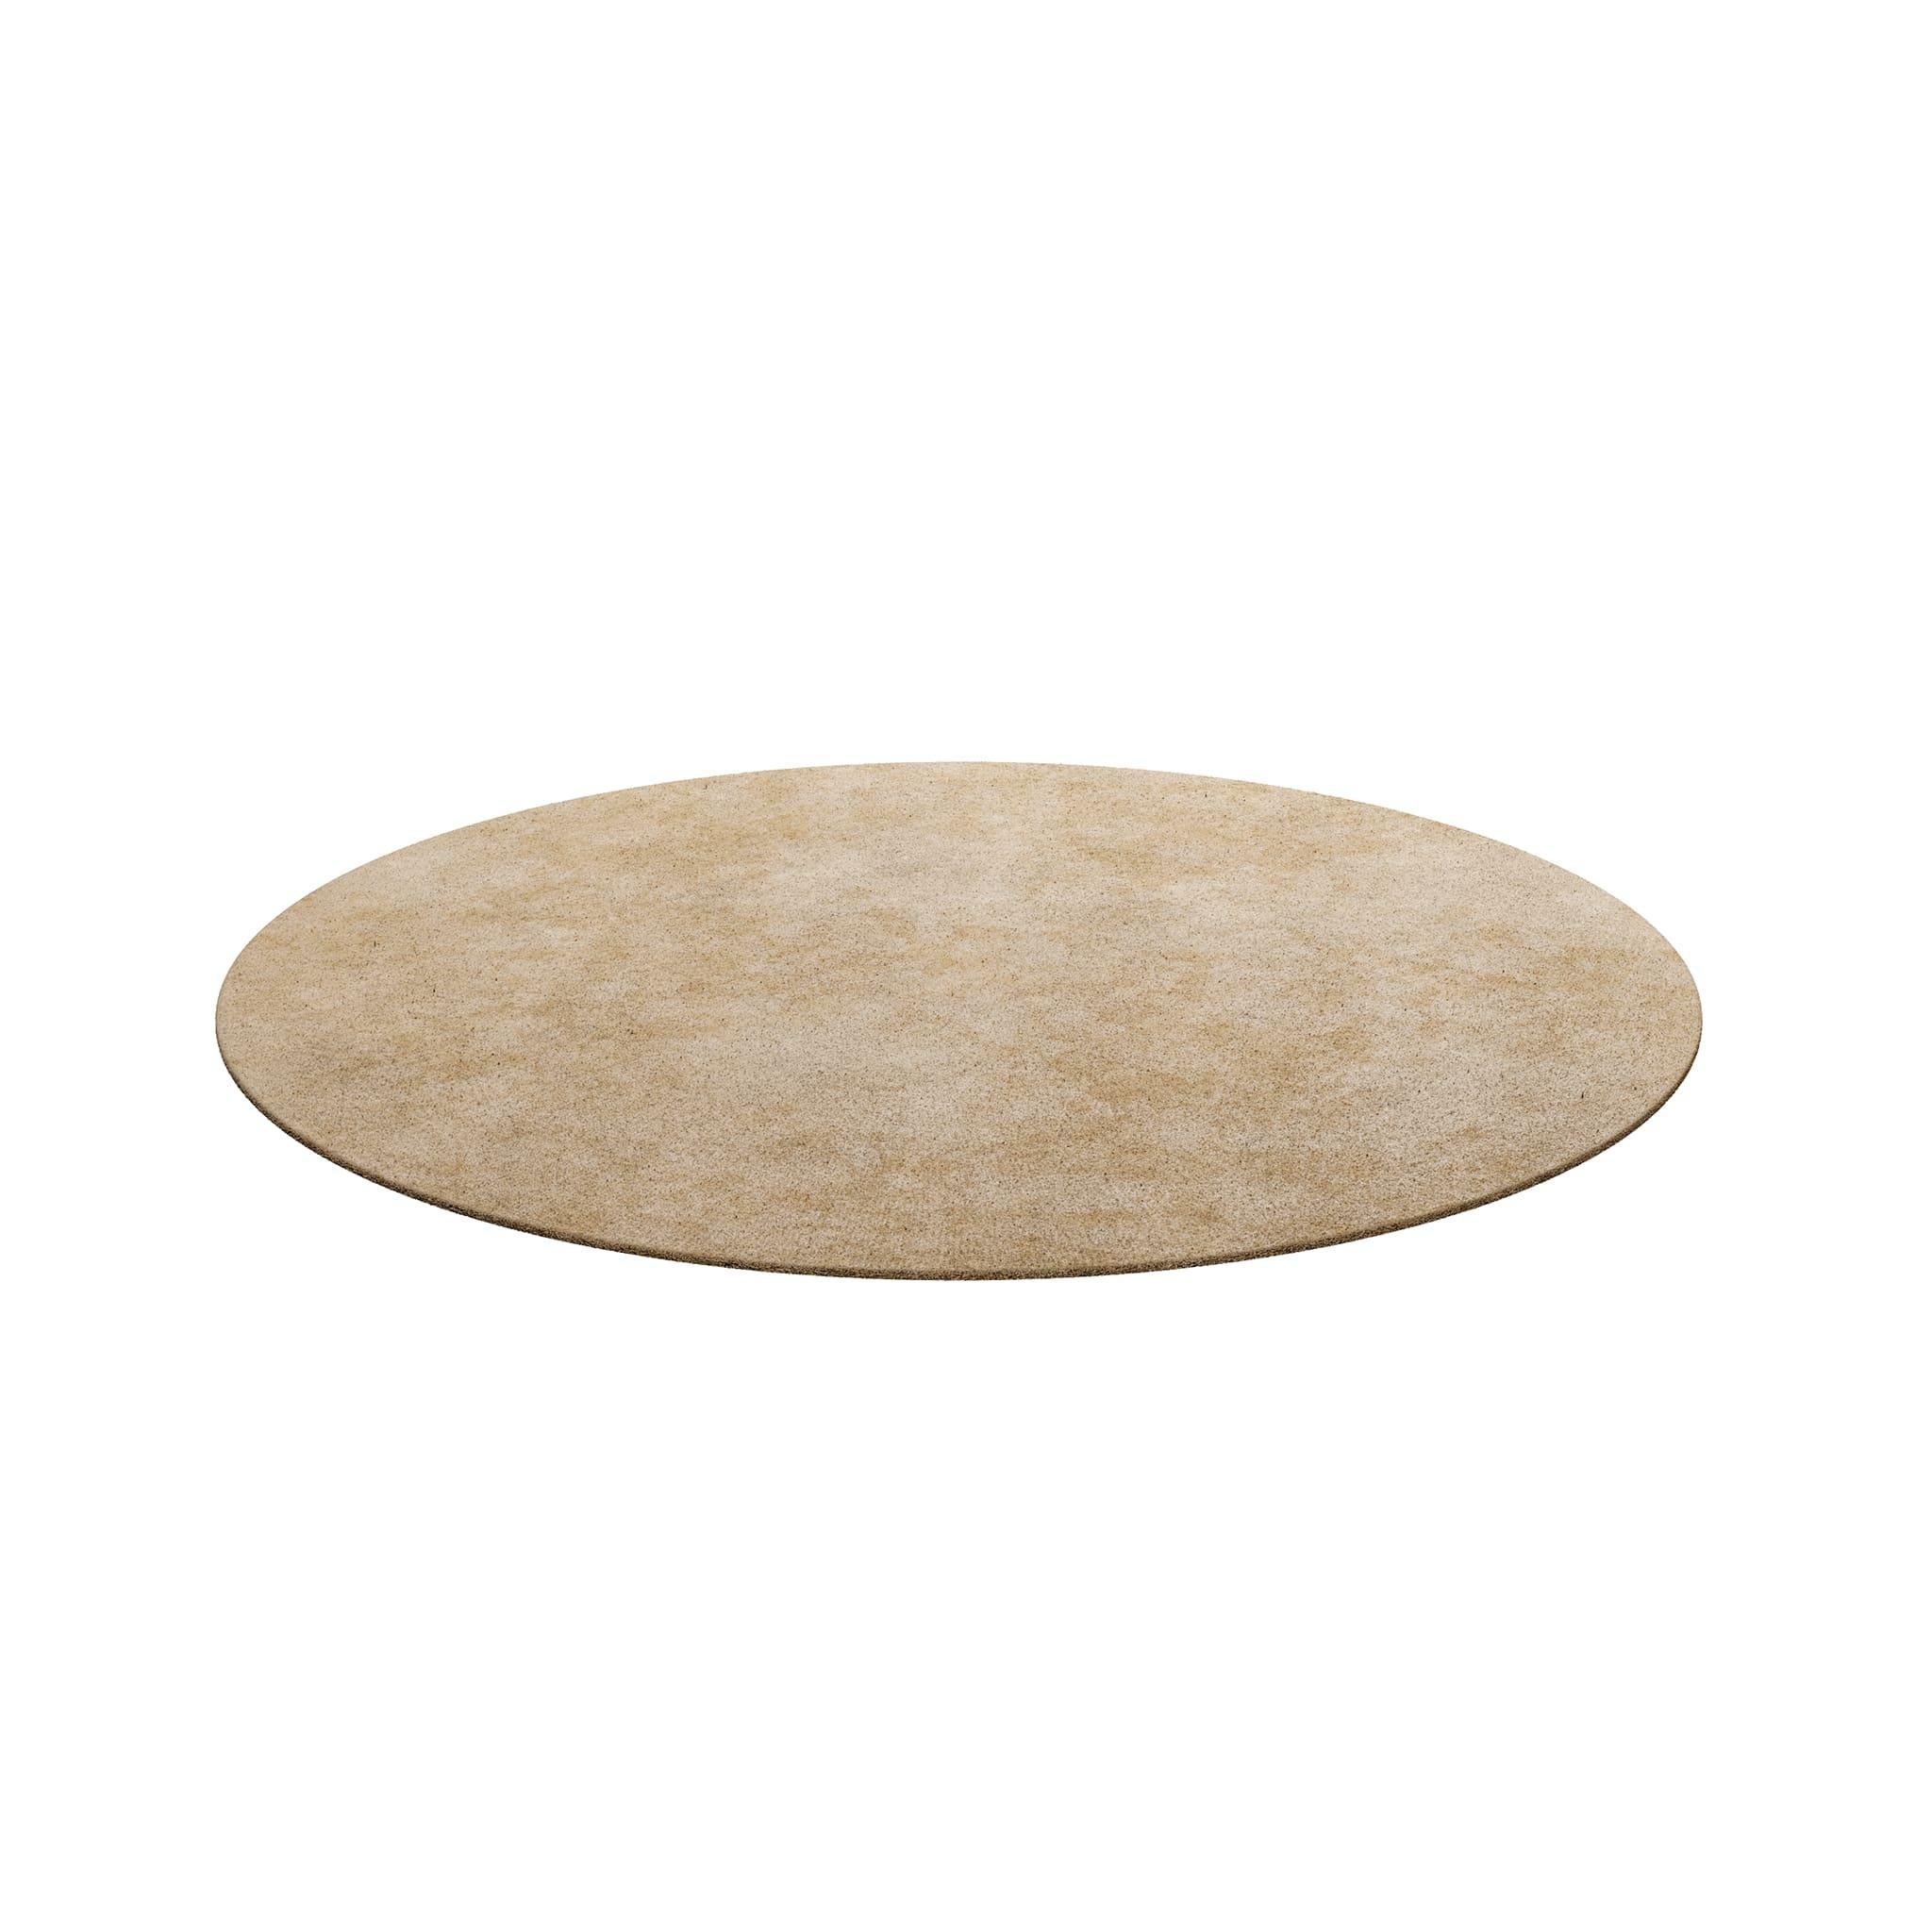 Tapis Round Corn #002 ist ein moderner Teppich mit einer regelmäßigen Form. Unsere unentbehrlichen Teppiche sind in verschiedenen Formen und trendigen Farbtönen erhältlich, die mit Bedacht ausgewählt wurden, um eine Inneneinrichtung zu ergänzen, die